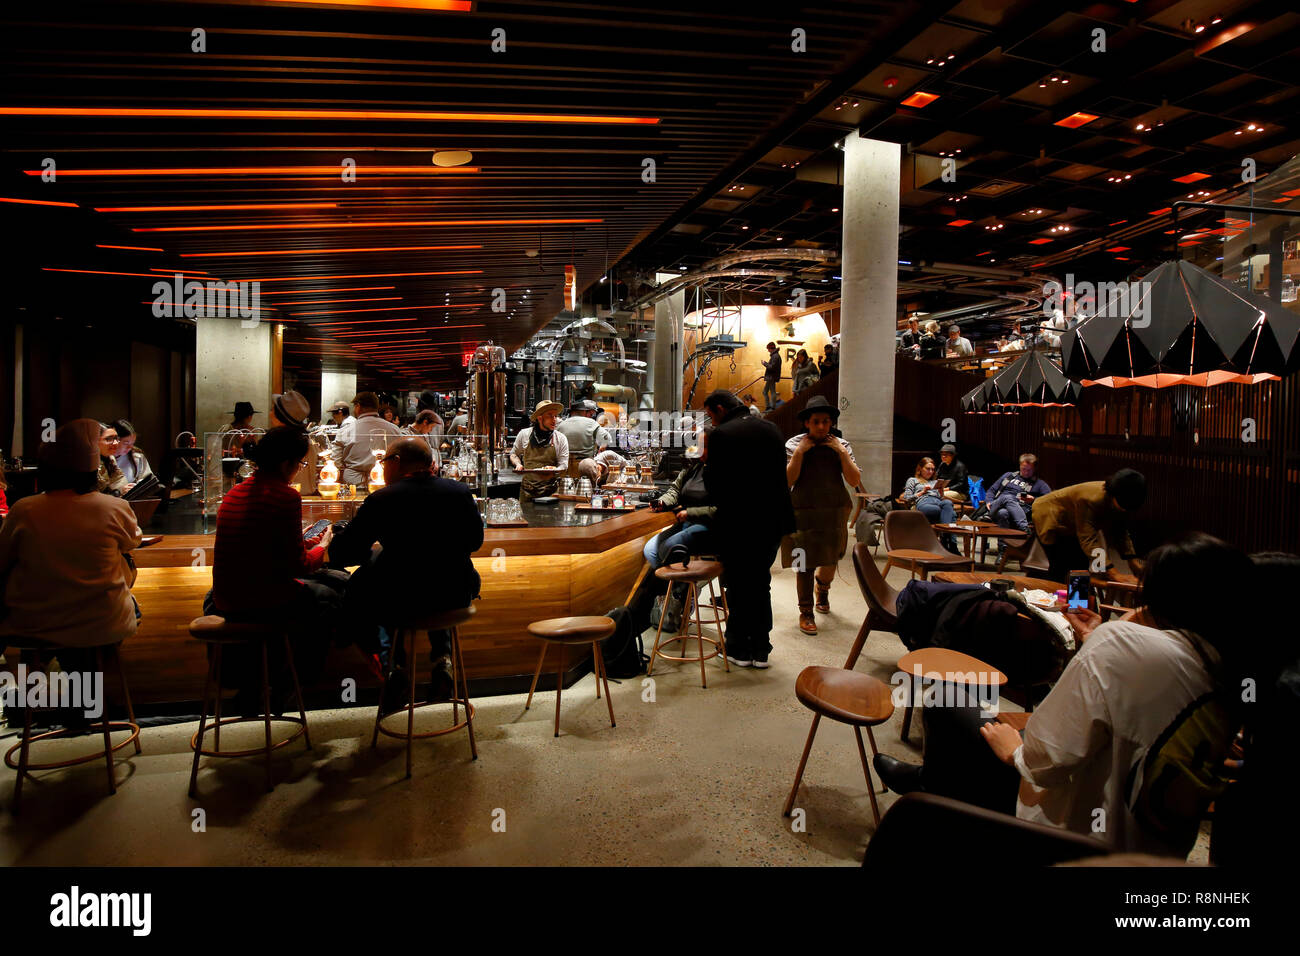 La experiencia Bar ubicado dentro de la Reserva de Nueva York Roastery Starbucks Foto de stock